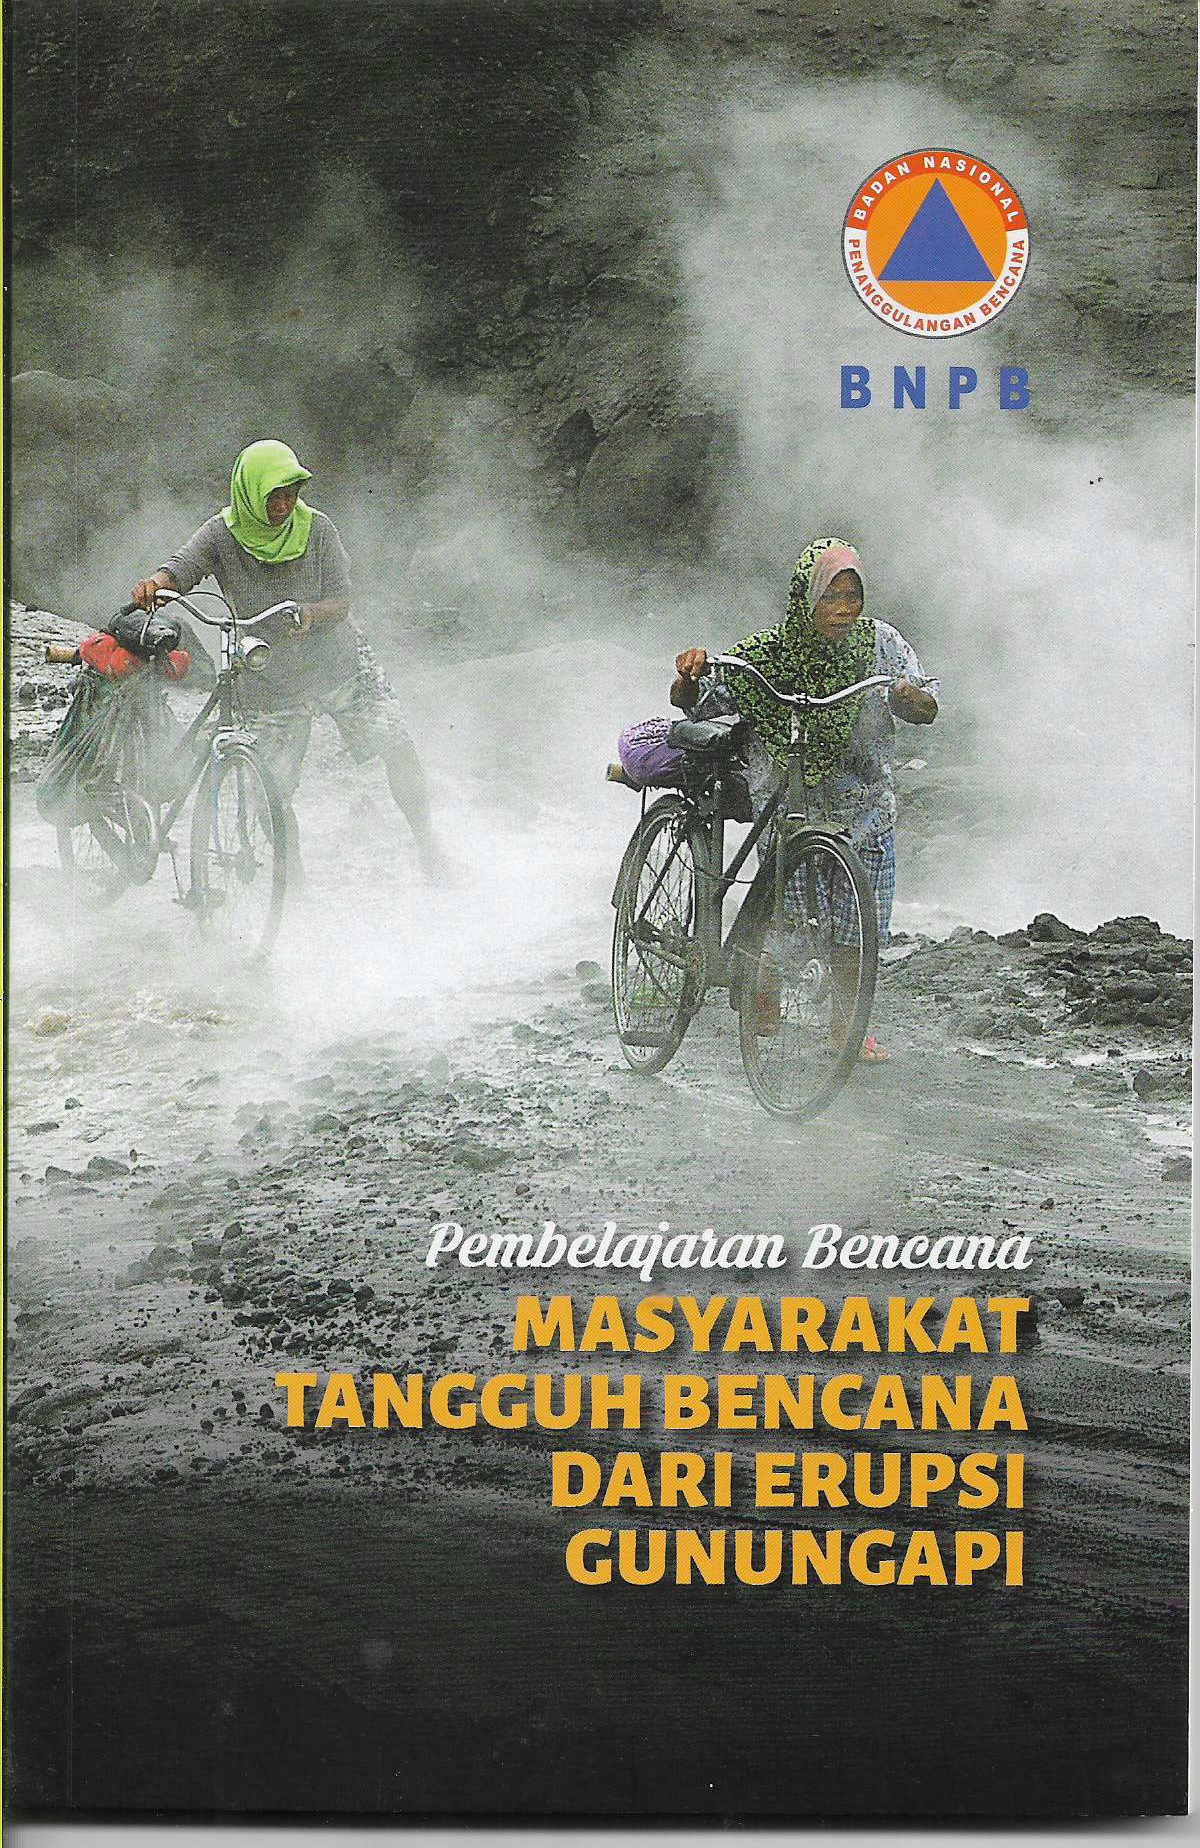 Pembelajaran Bencana Masyarakat Tangguh Bencana dari Erupsi Gunungapi: Proses Belajar Masyarakat dalam Menghadapi Bencana dan Risikonya yang Sering Terjadi di Indonesia